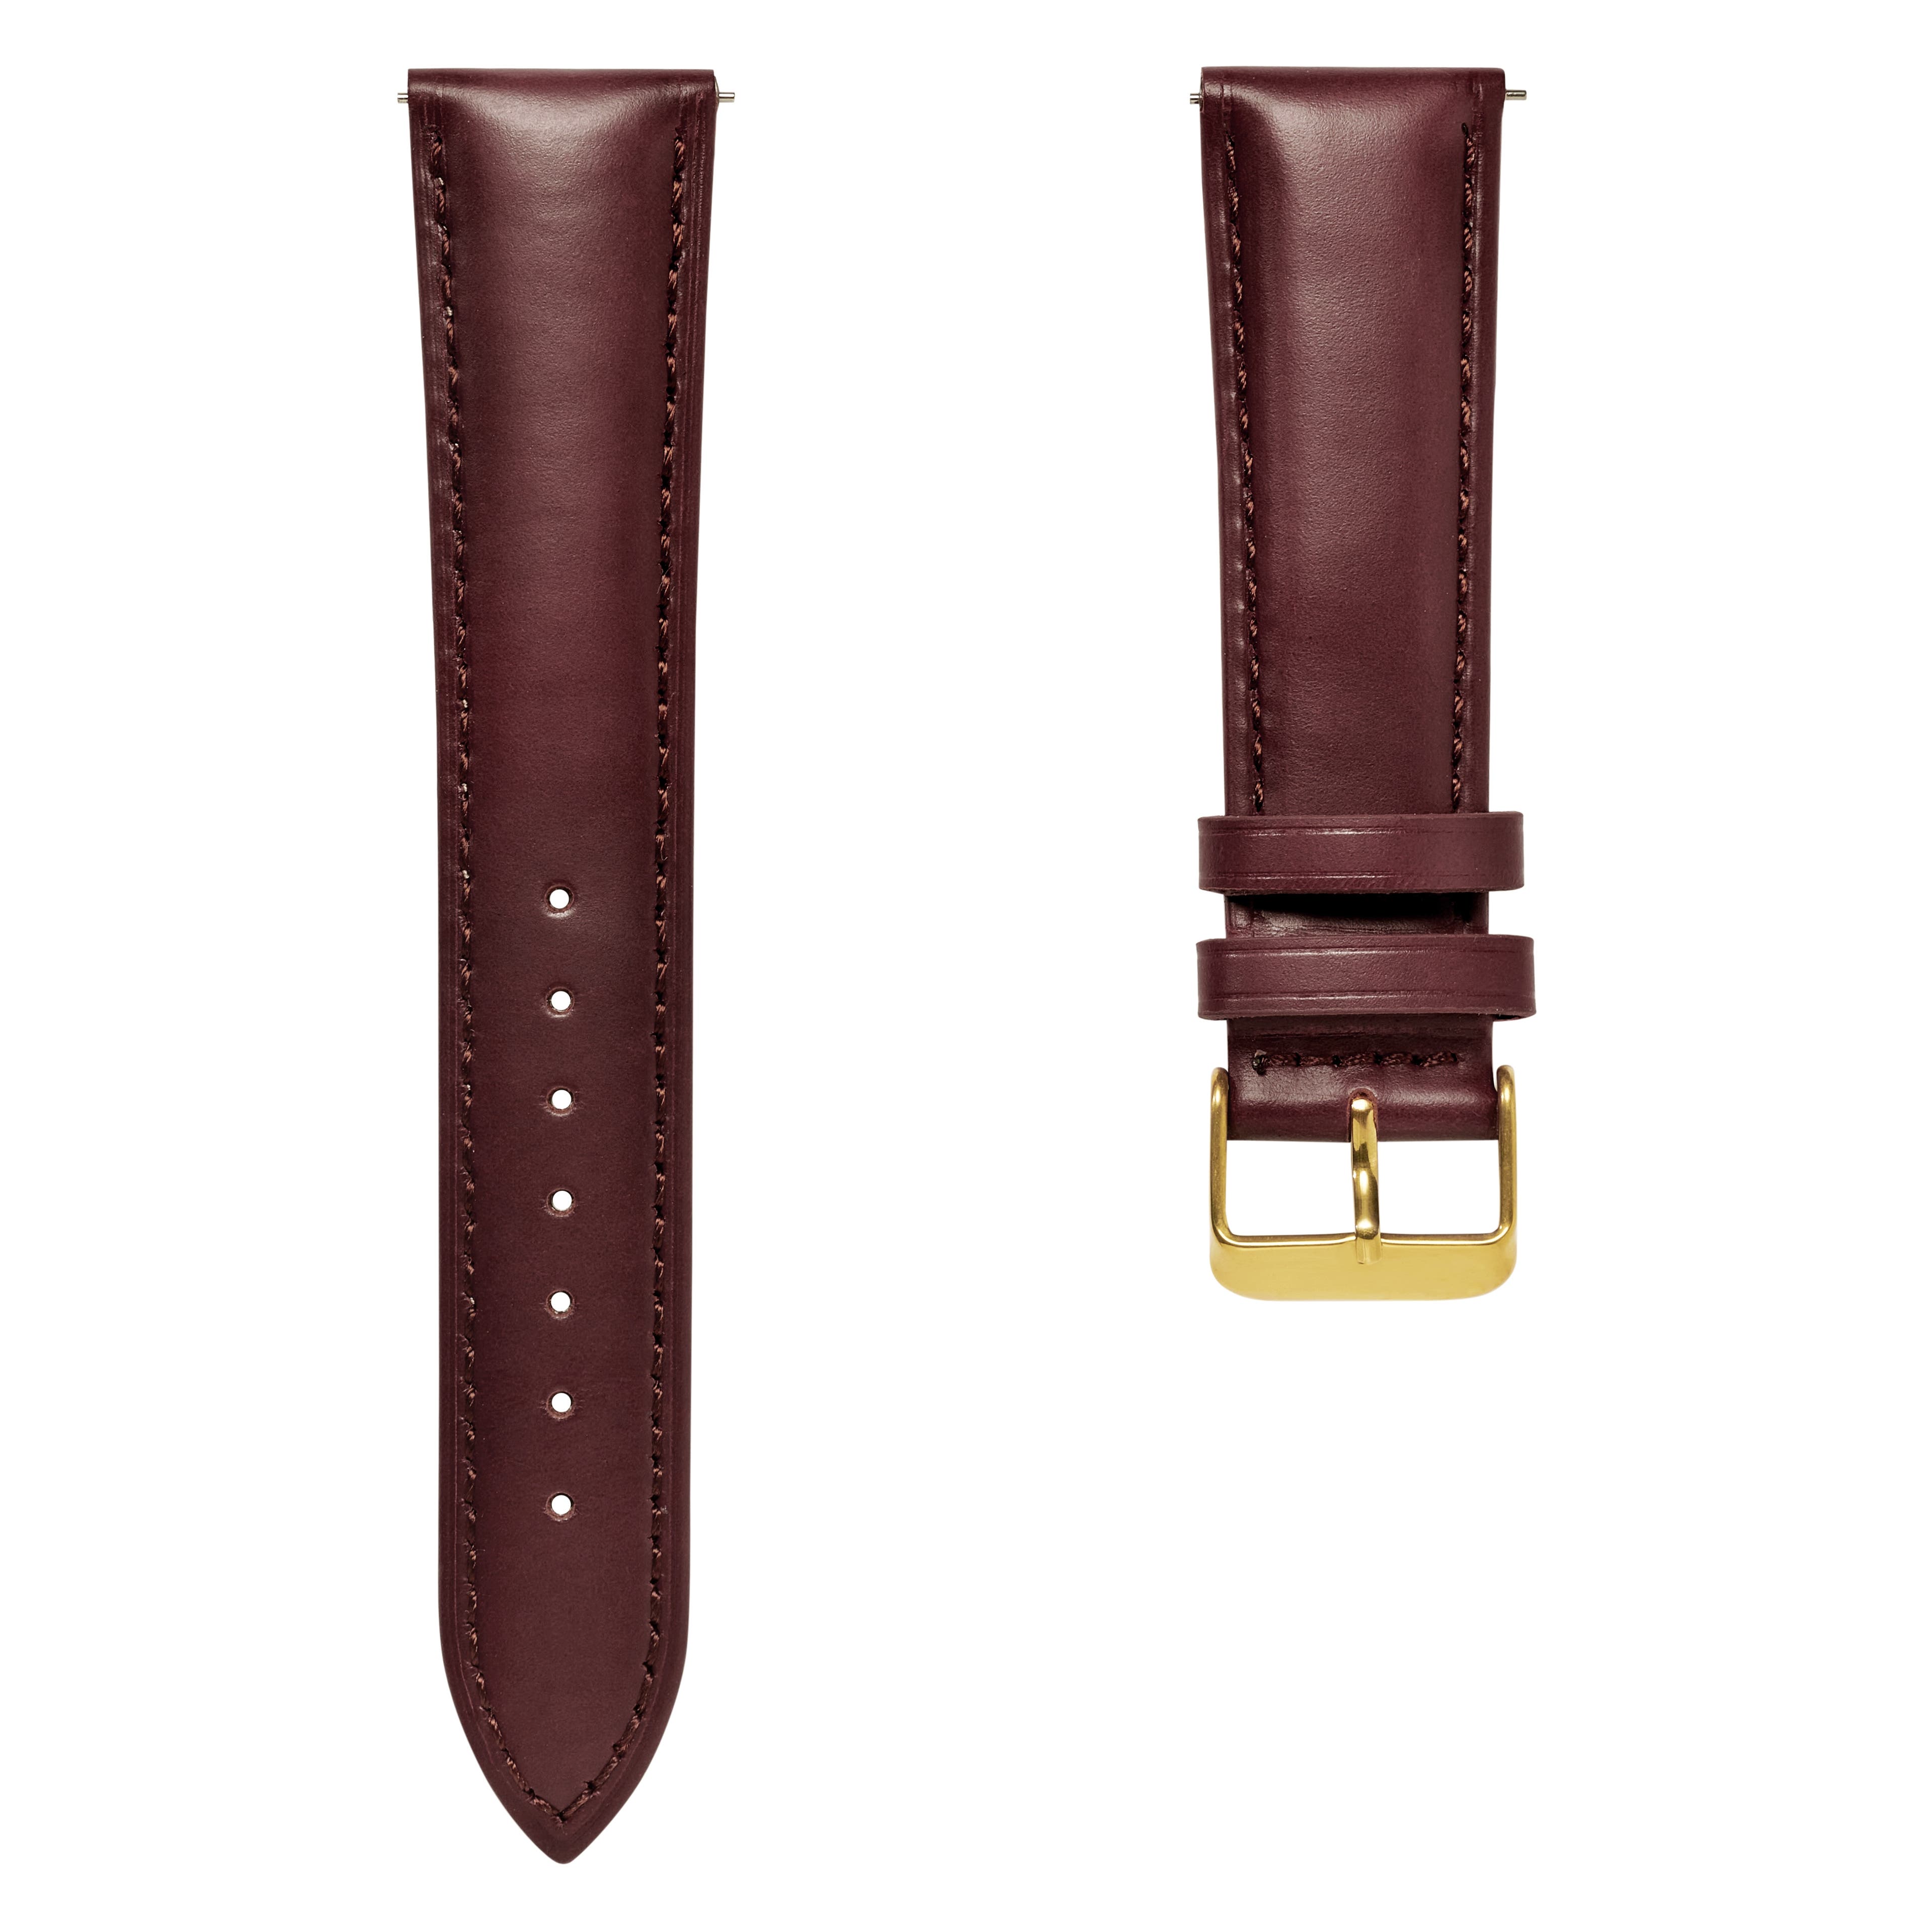 Bracelet de montre en cuir marron foncé 18 mm avec boucle dorée - Attache rapide